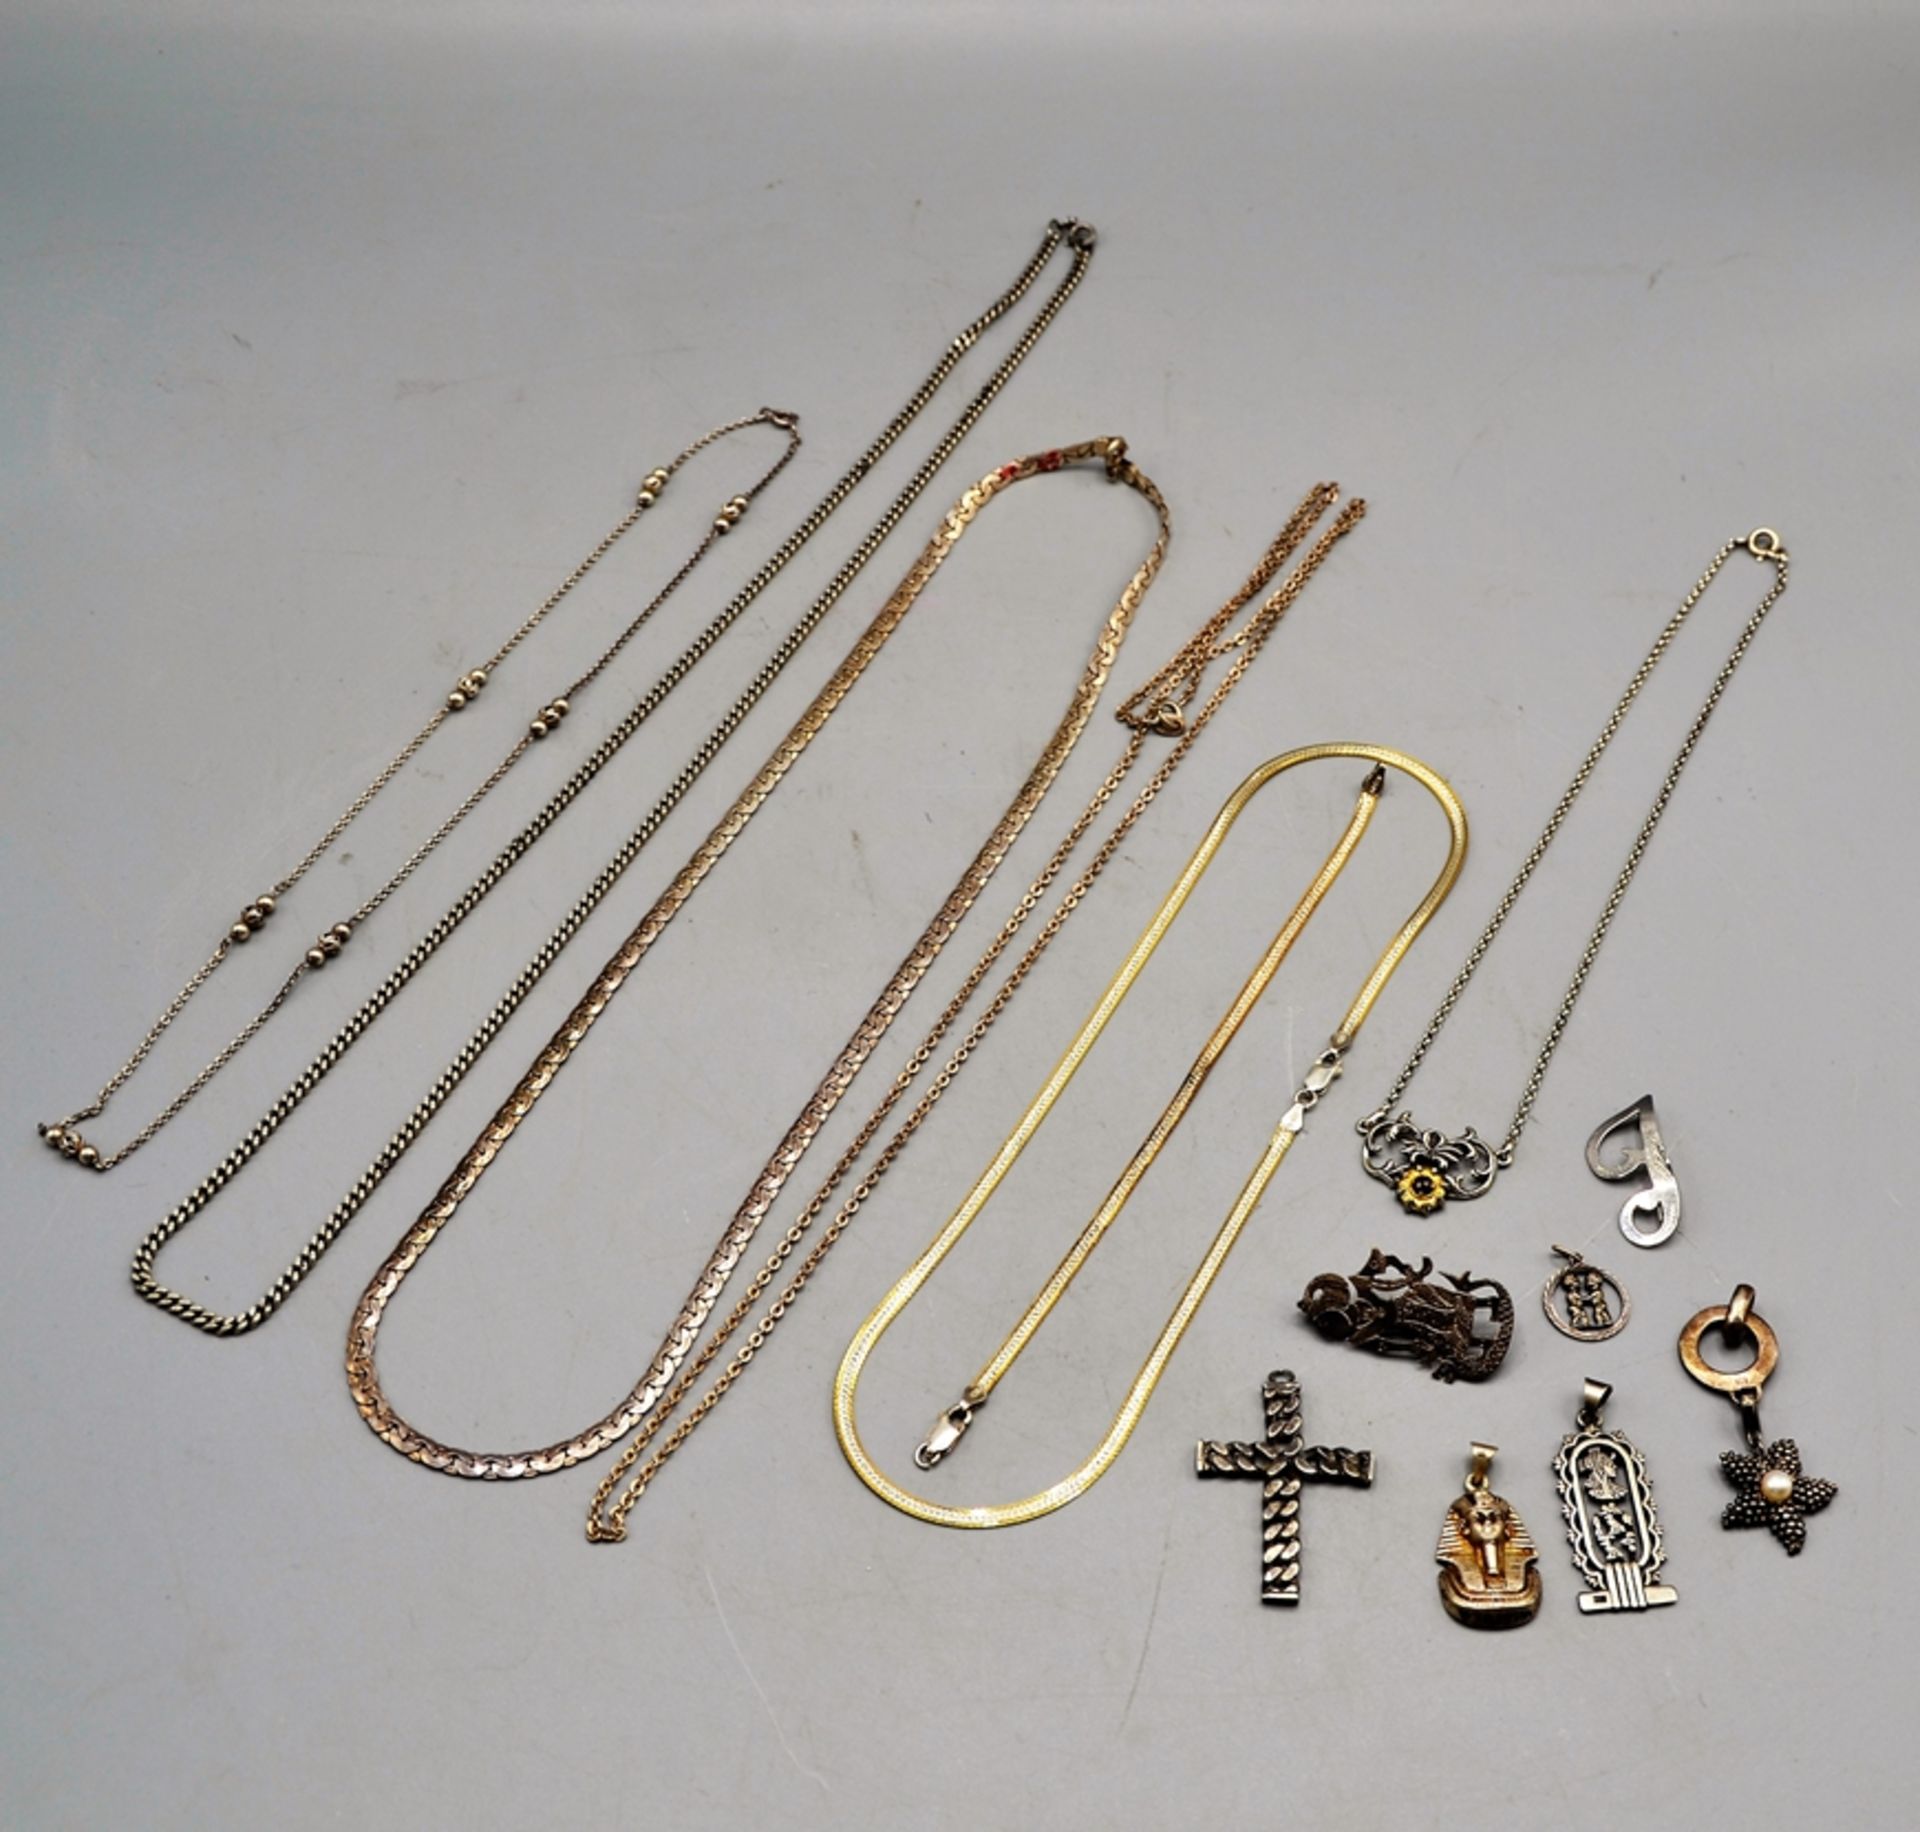 Schmuckkonvolut Silber 14-teilig, darunter 6 Ketten, 1 Armband, 5 Anhänger, 2 Broschen, zus. 107,9 